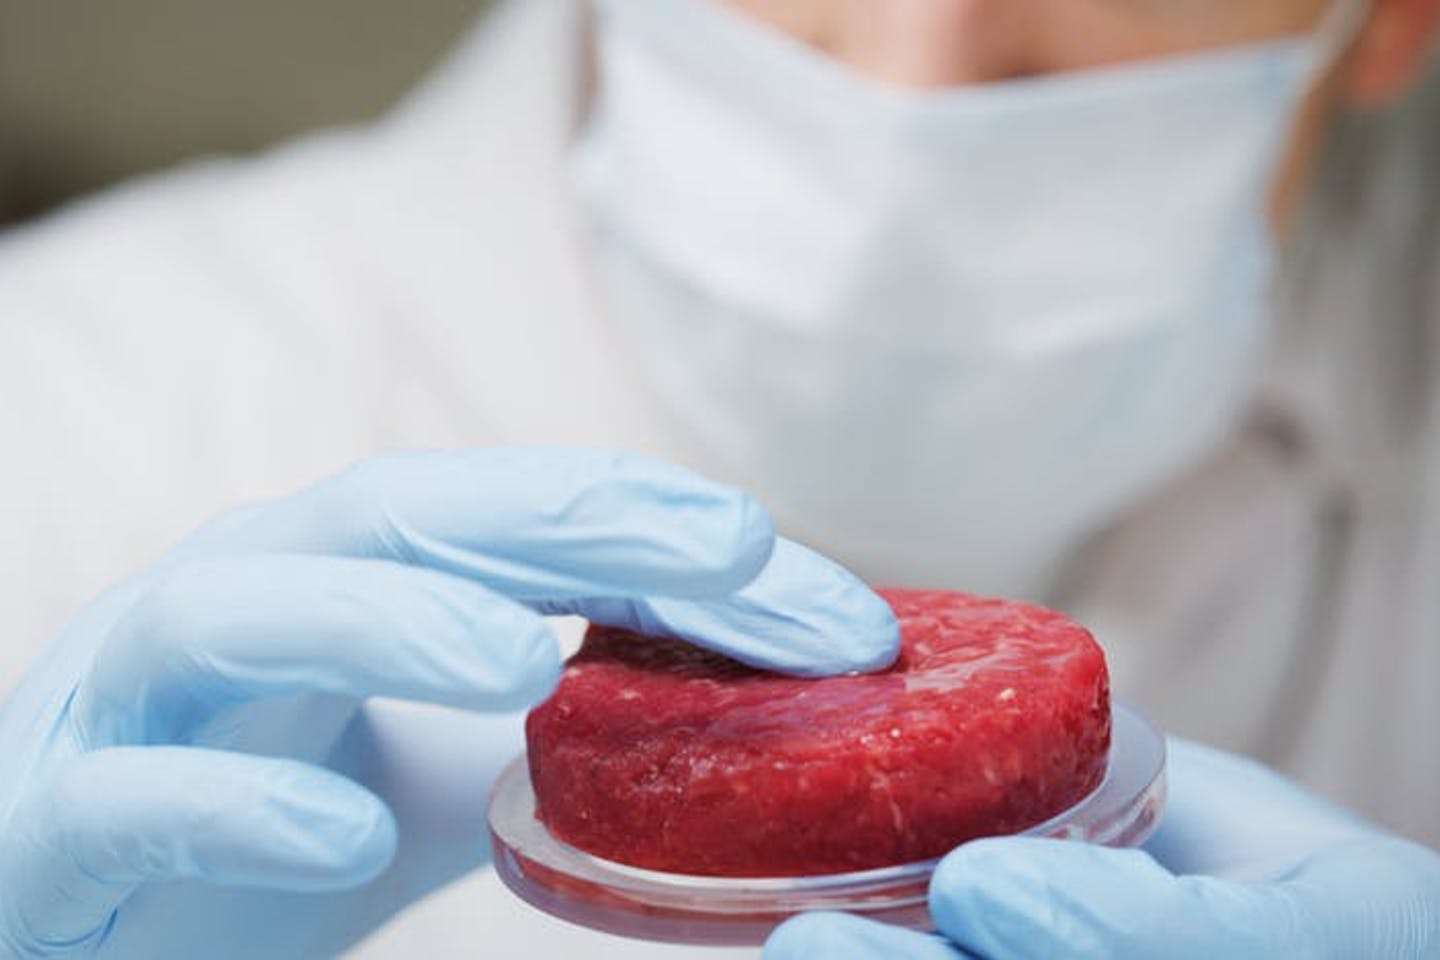 بسیاری از مردم از خوردن گوشت تولیدشده در آزمایشگاه متنفرند